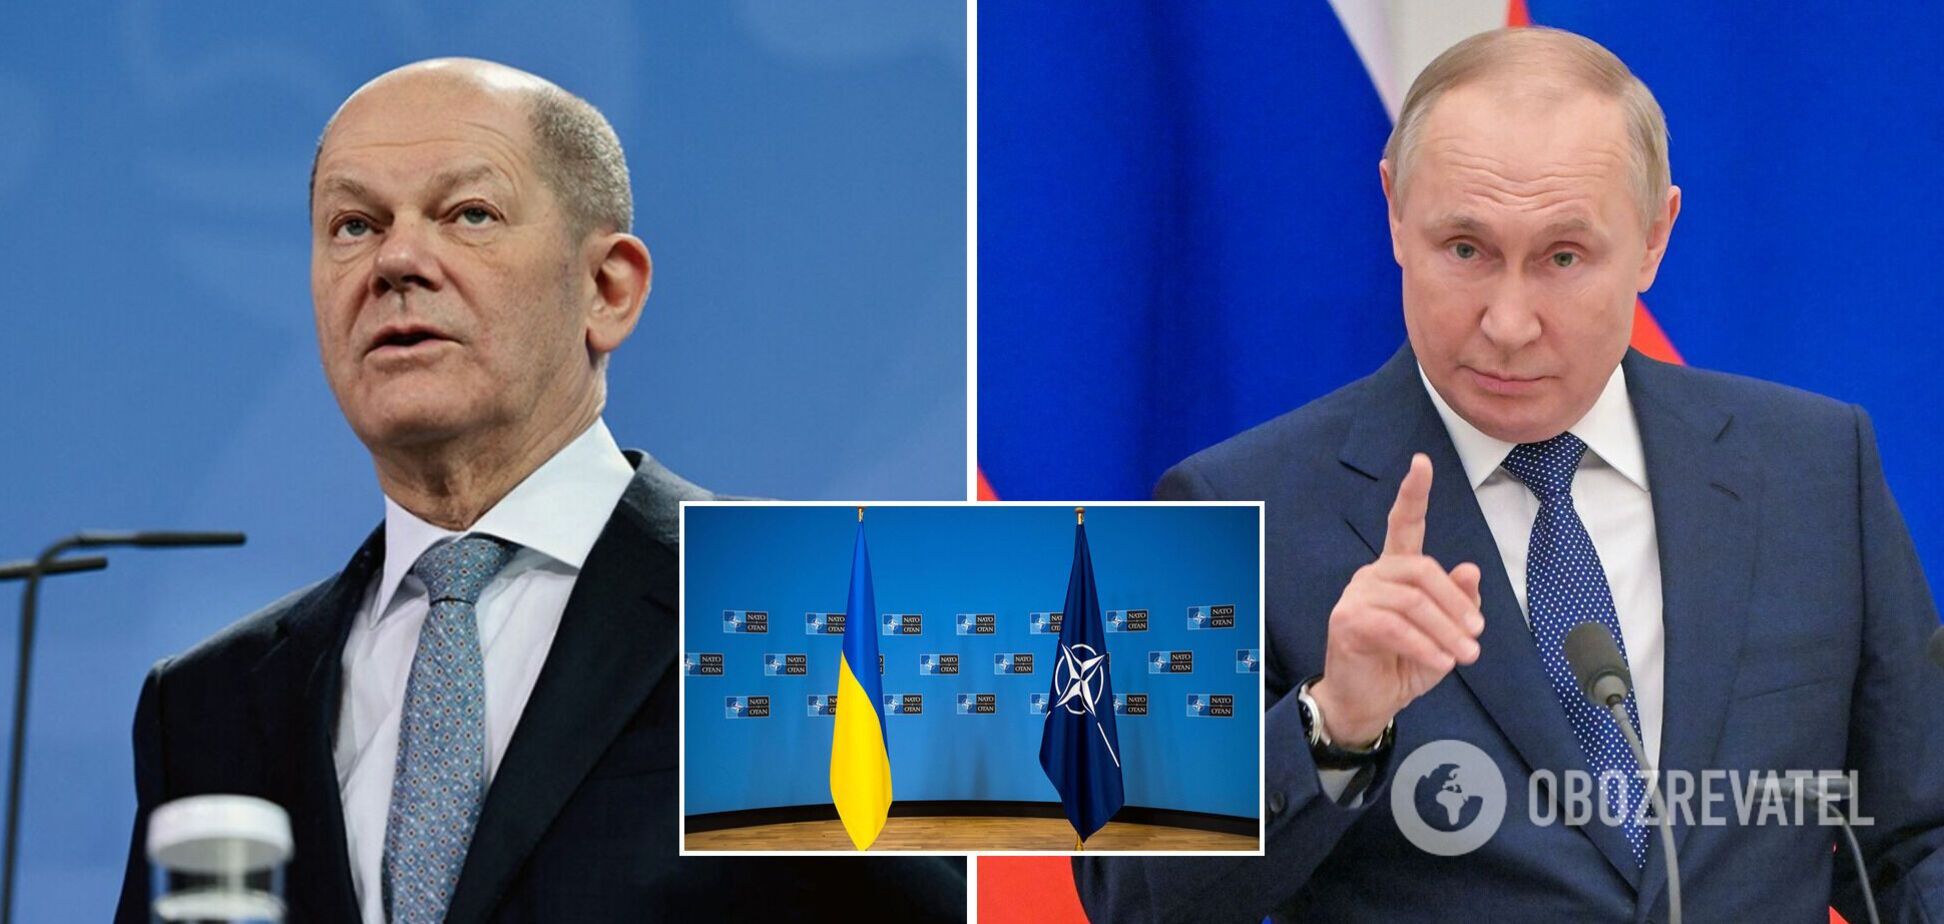 Расширение НАТО не обсуждается: Шольц ответил Путину на требование отказать Украине во вступлении 'прямо сейчас'